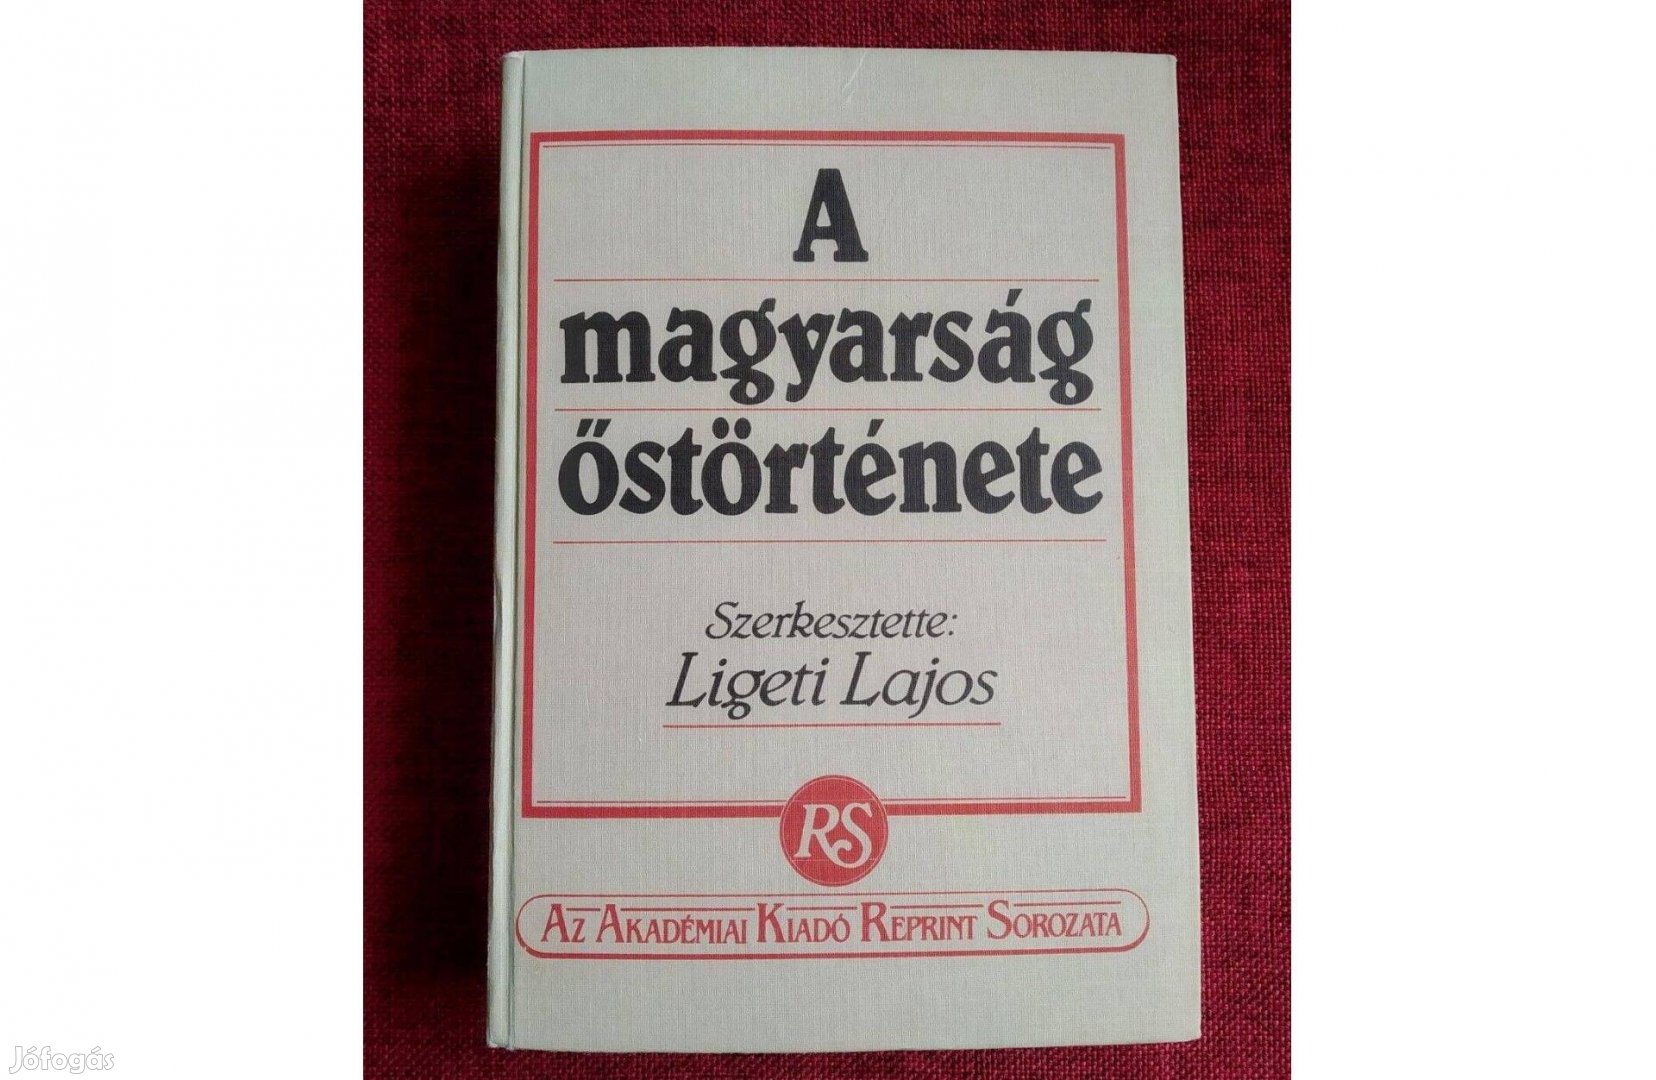 A Magyarság Őstörténete Ligeti Lajos (szerkesztette)